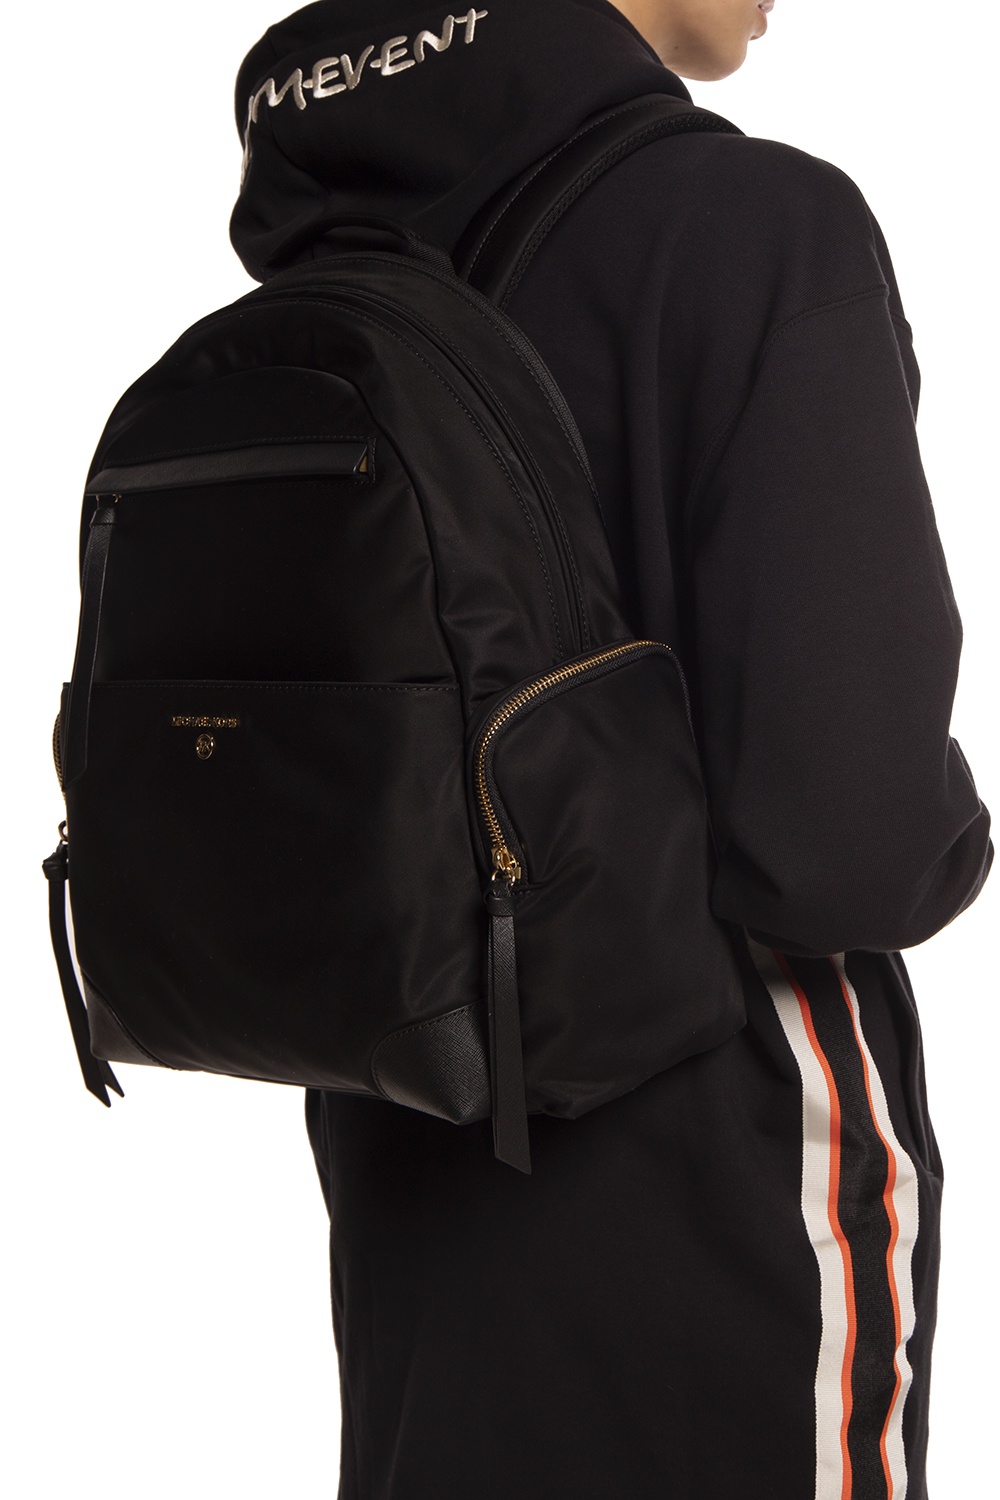 Michael Kors Prescott Large Nylon Backpack